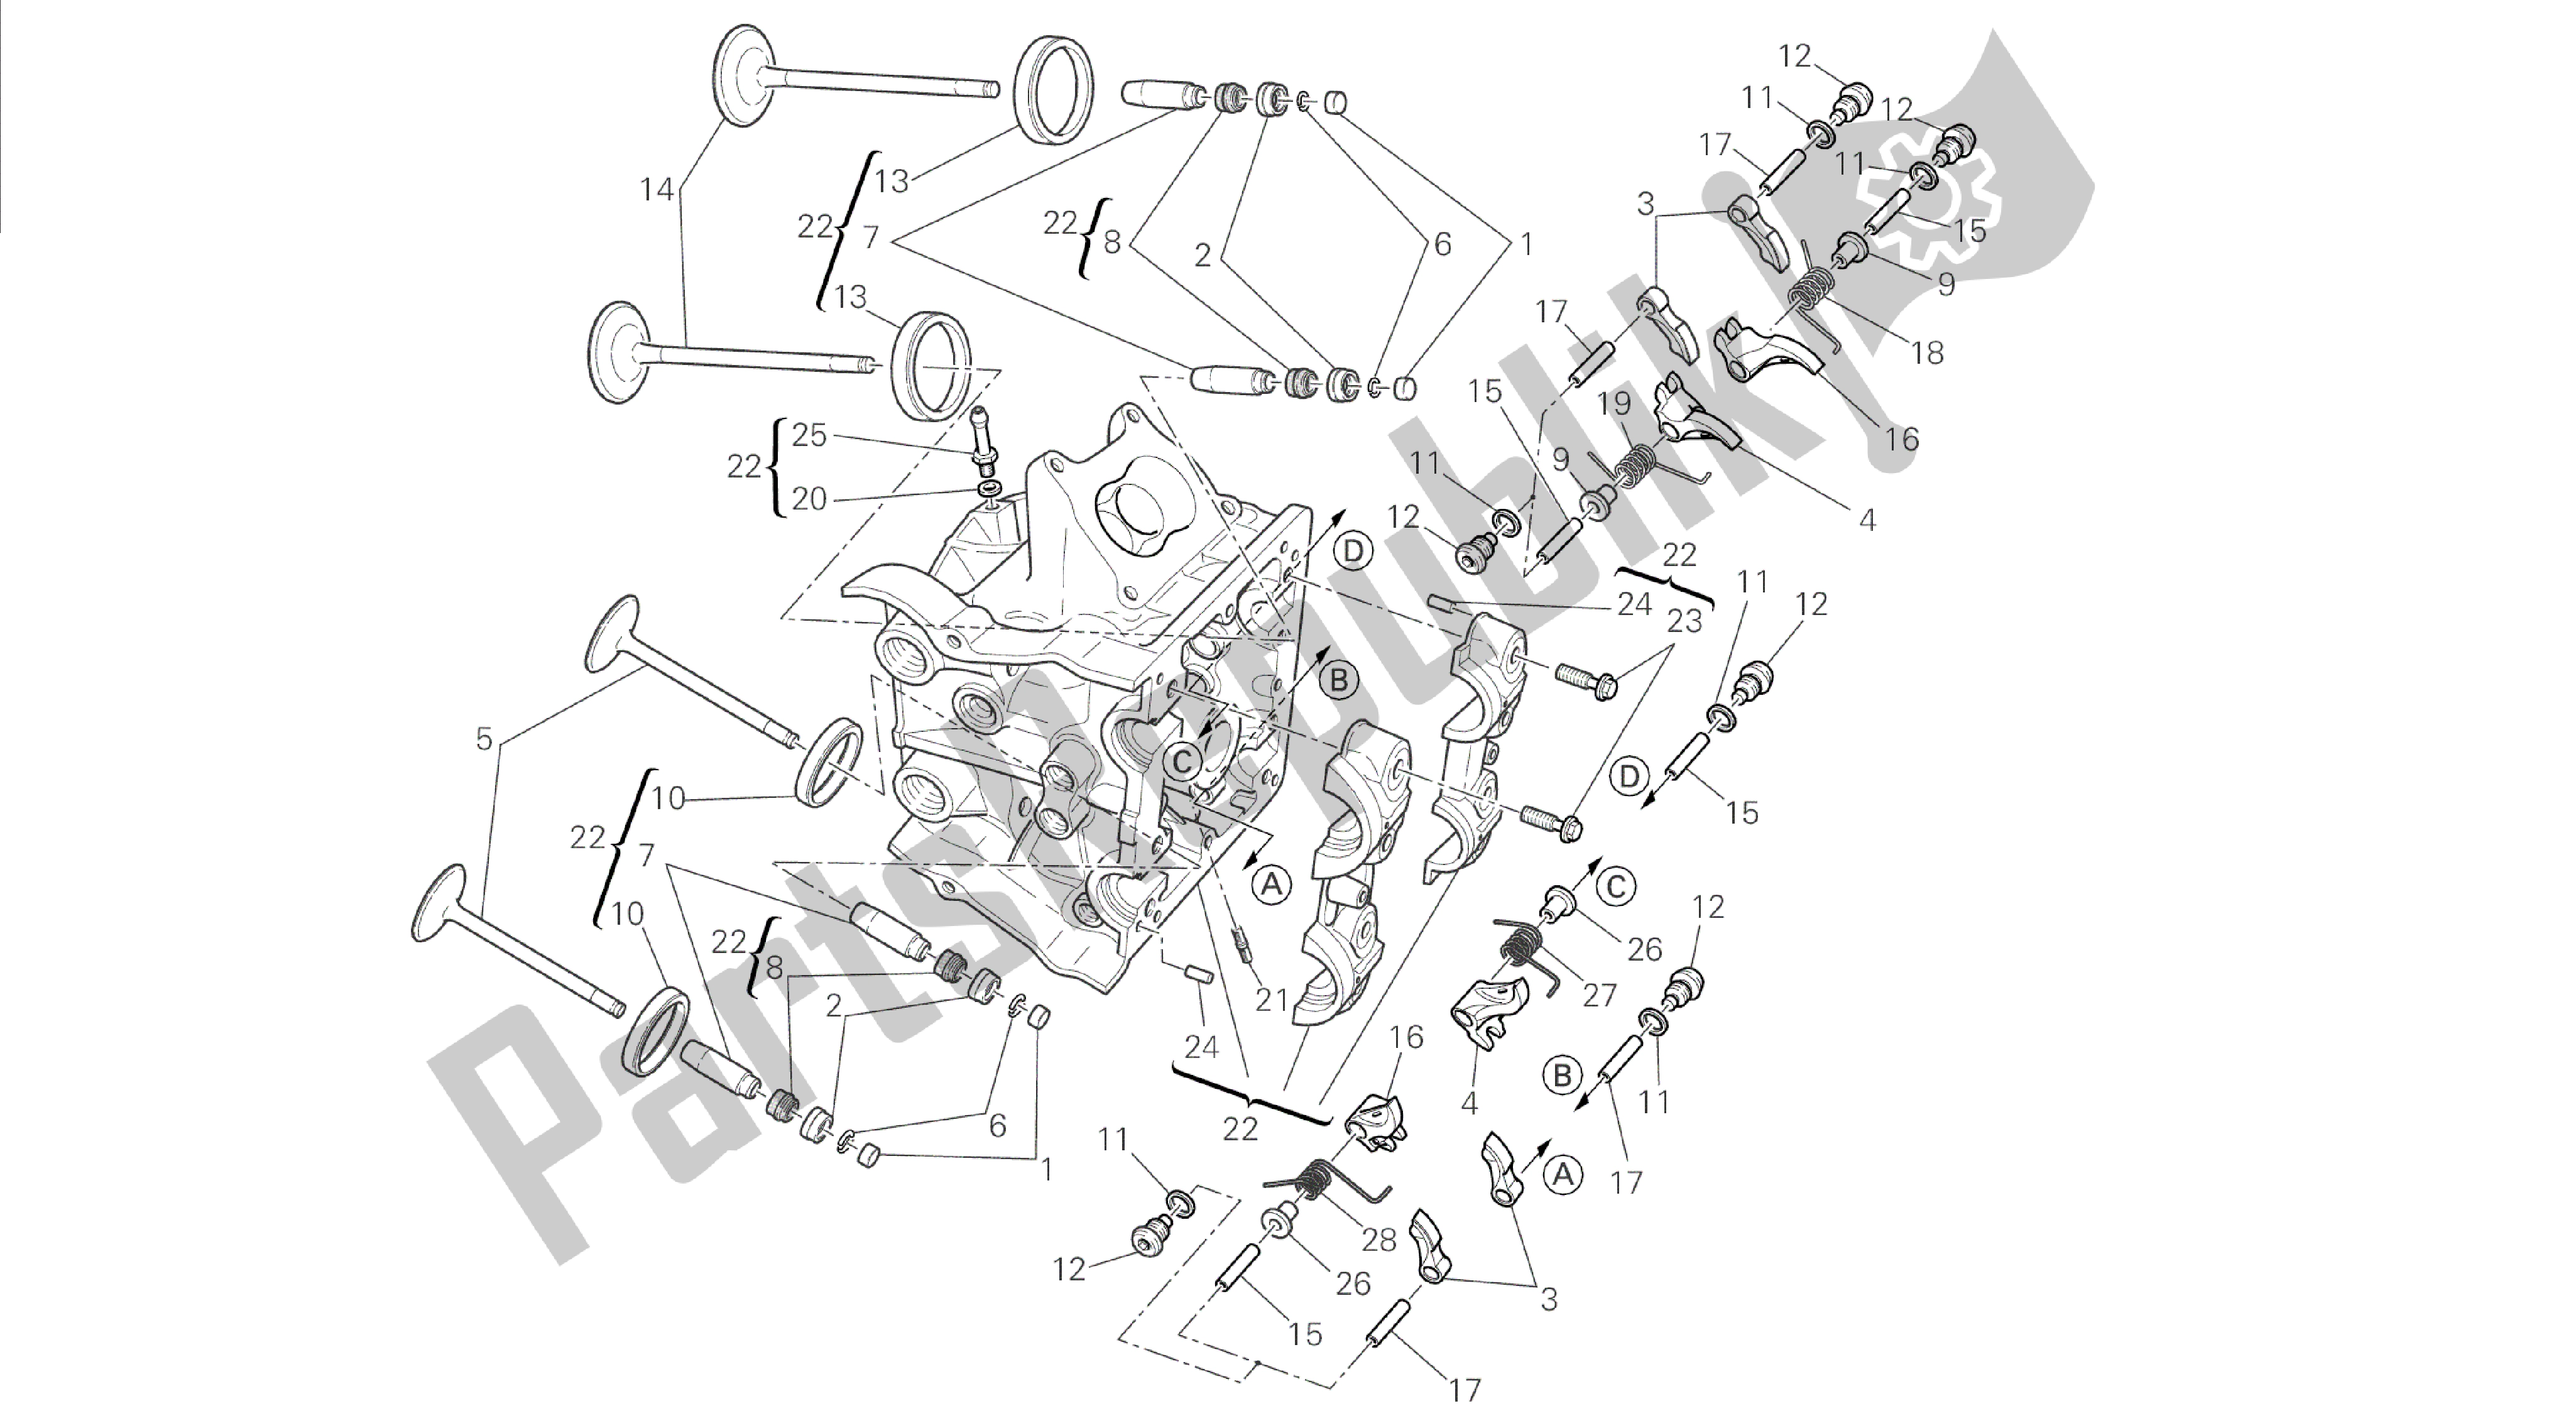 Todas las partes para Dibujo 015 - Motor De Grupo De Culata Horizontal [mod: Dvl] de Ducati Diavel 1200 2014